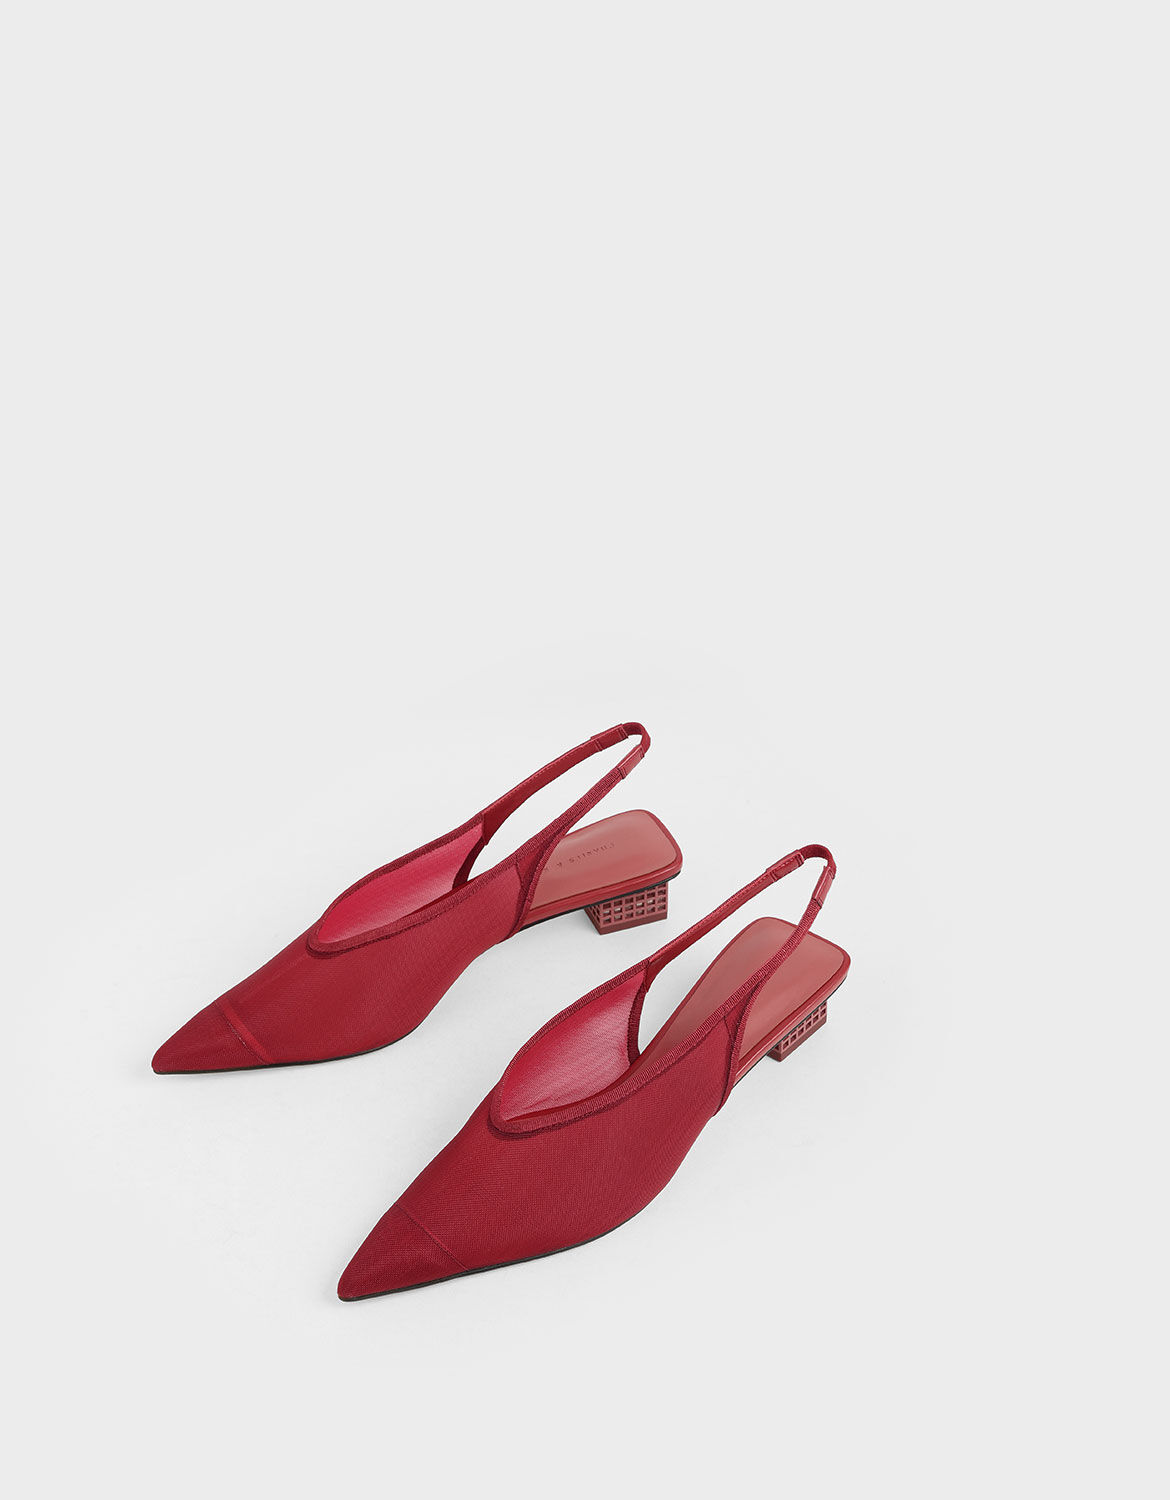 red mesh heels